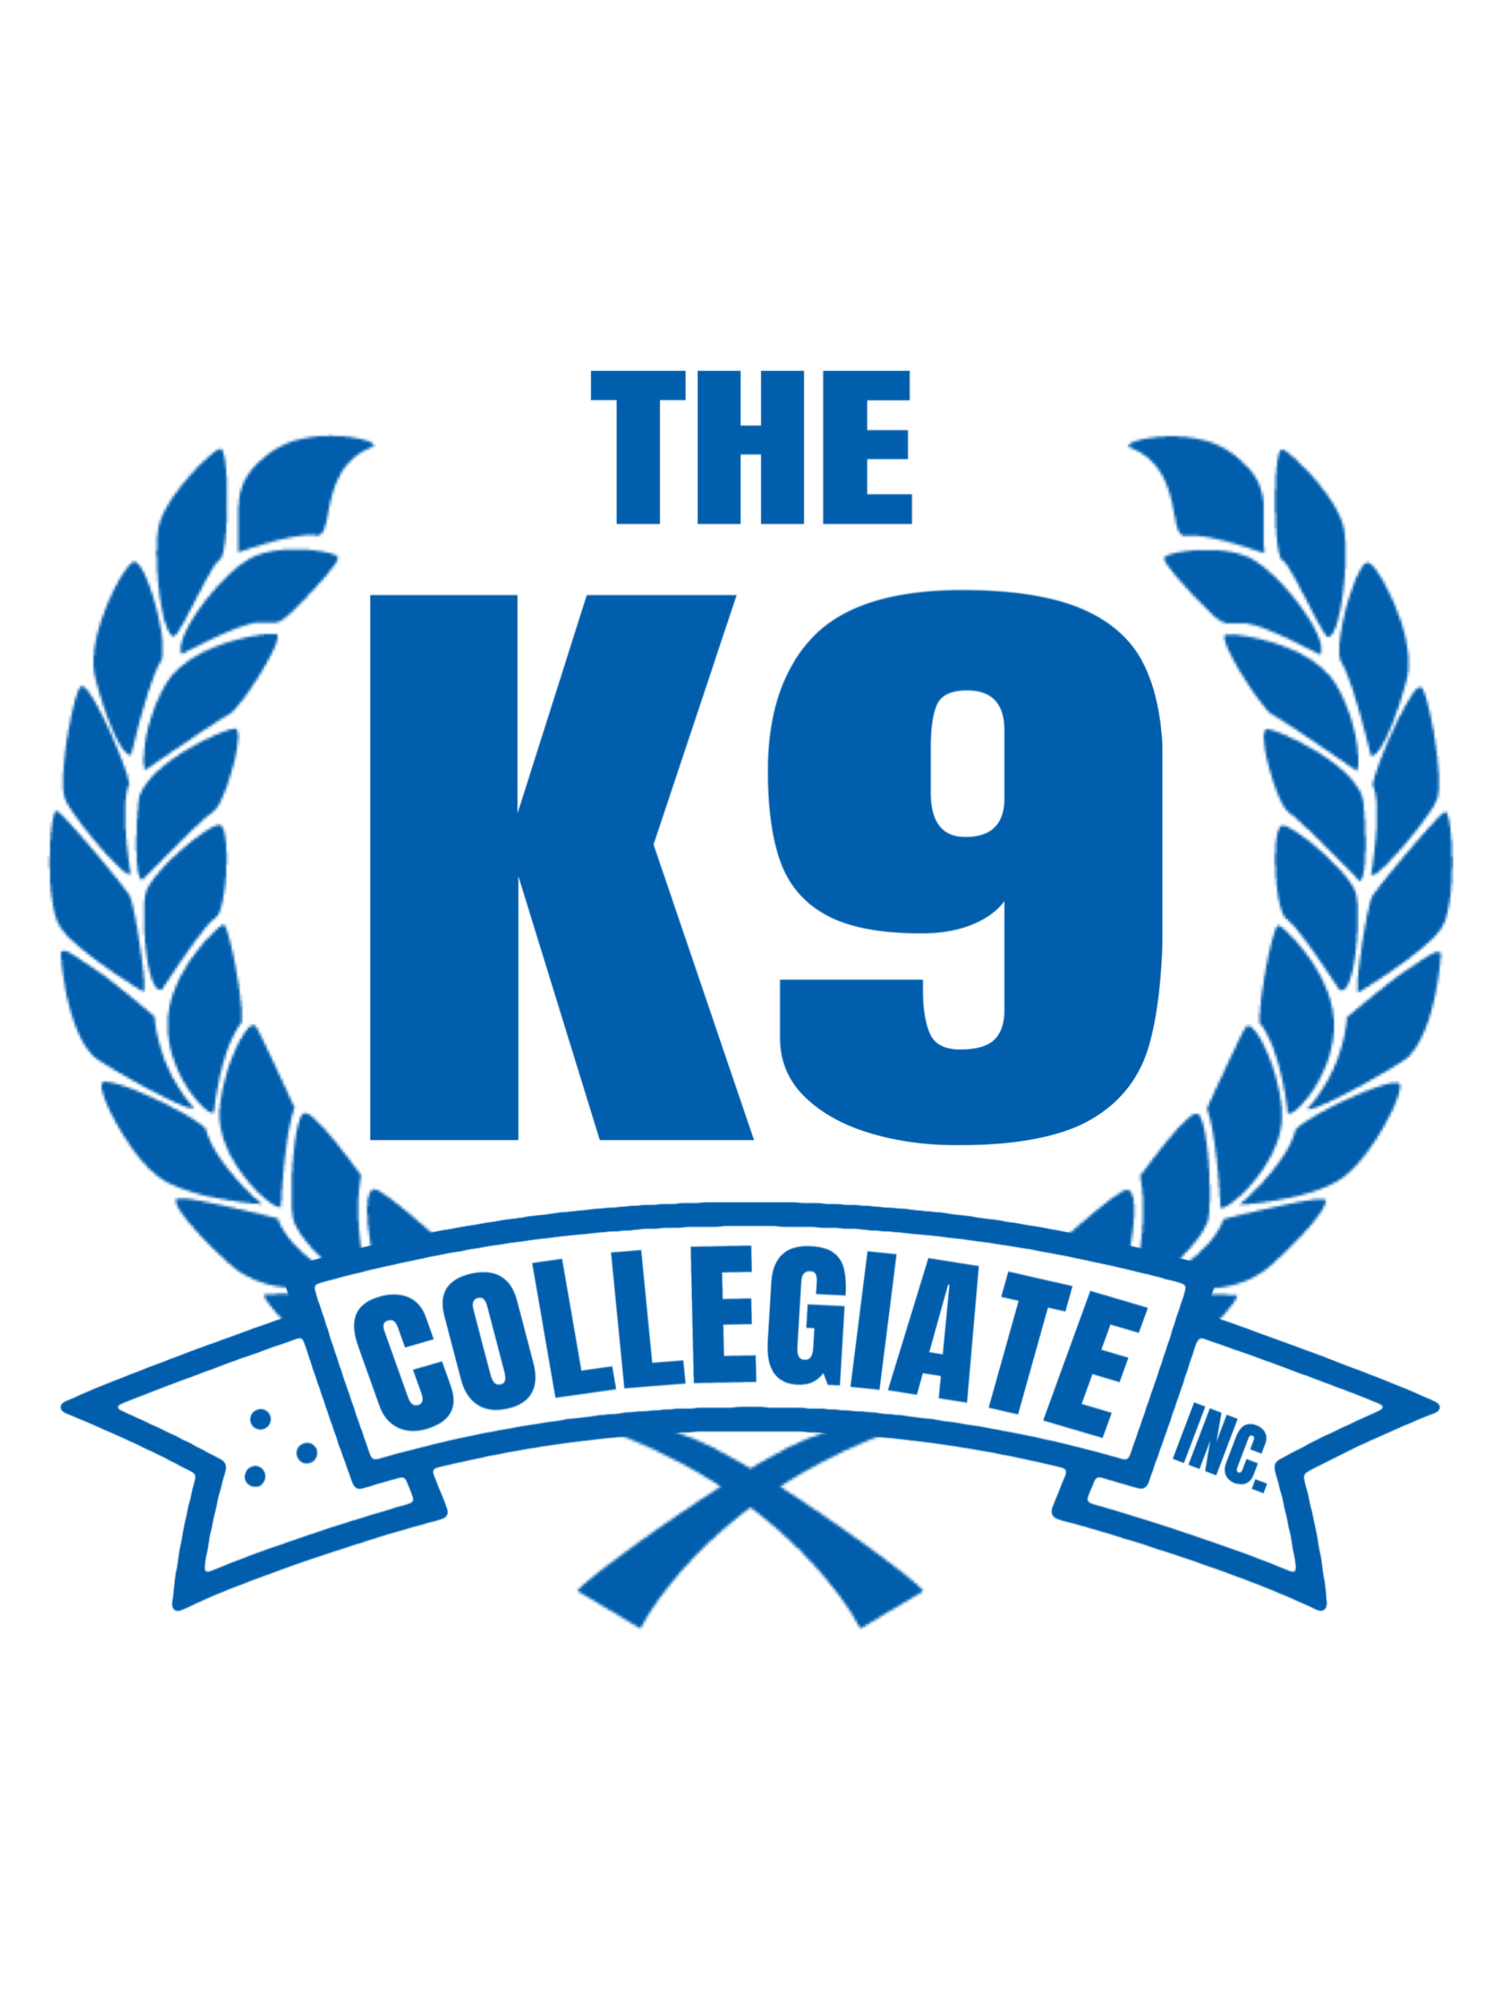 THE K9 COLLEGIATE